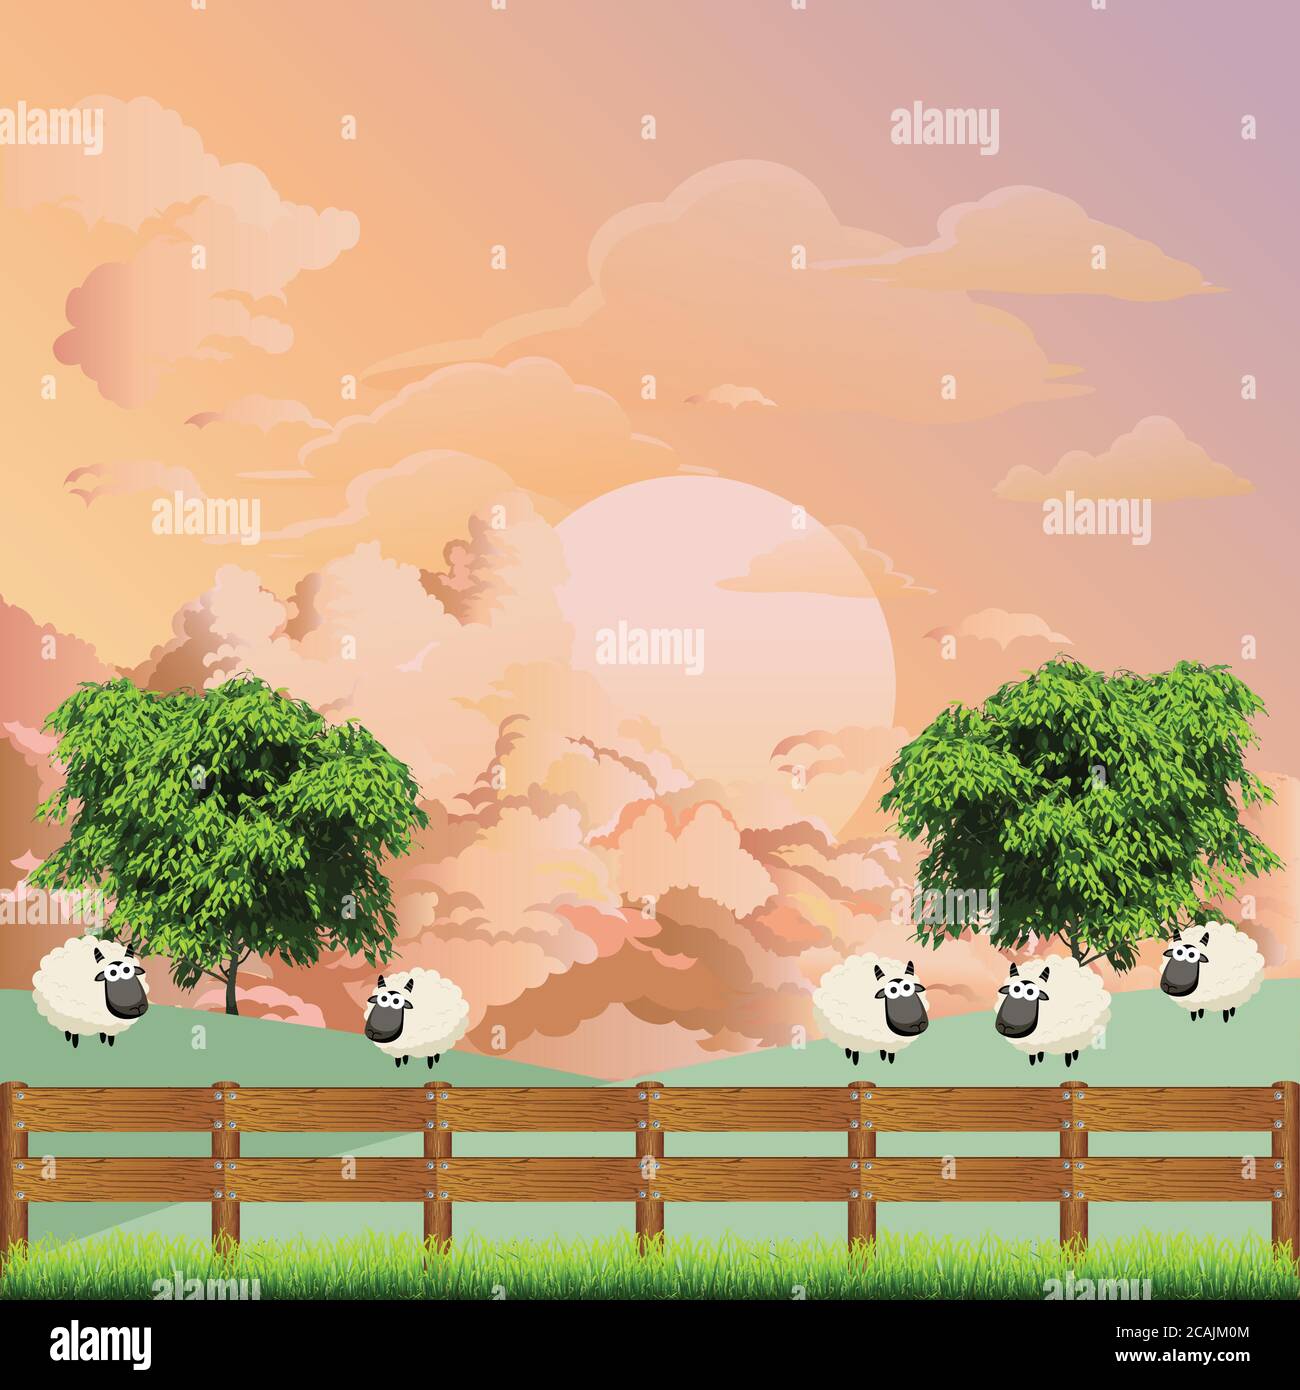 Pintoresca escena rural con un rebaño de ovejas en el campo de pasto contra un amanecer o cielo al atardecer Ilustración del Vector